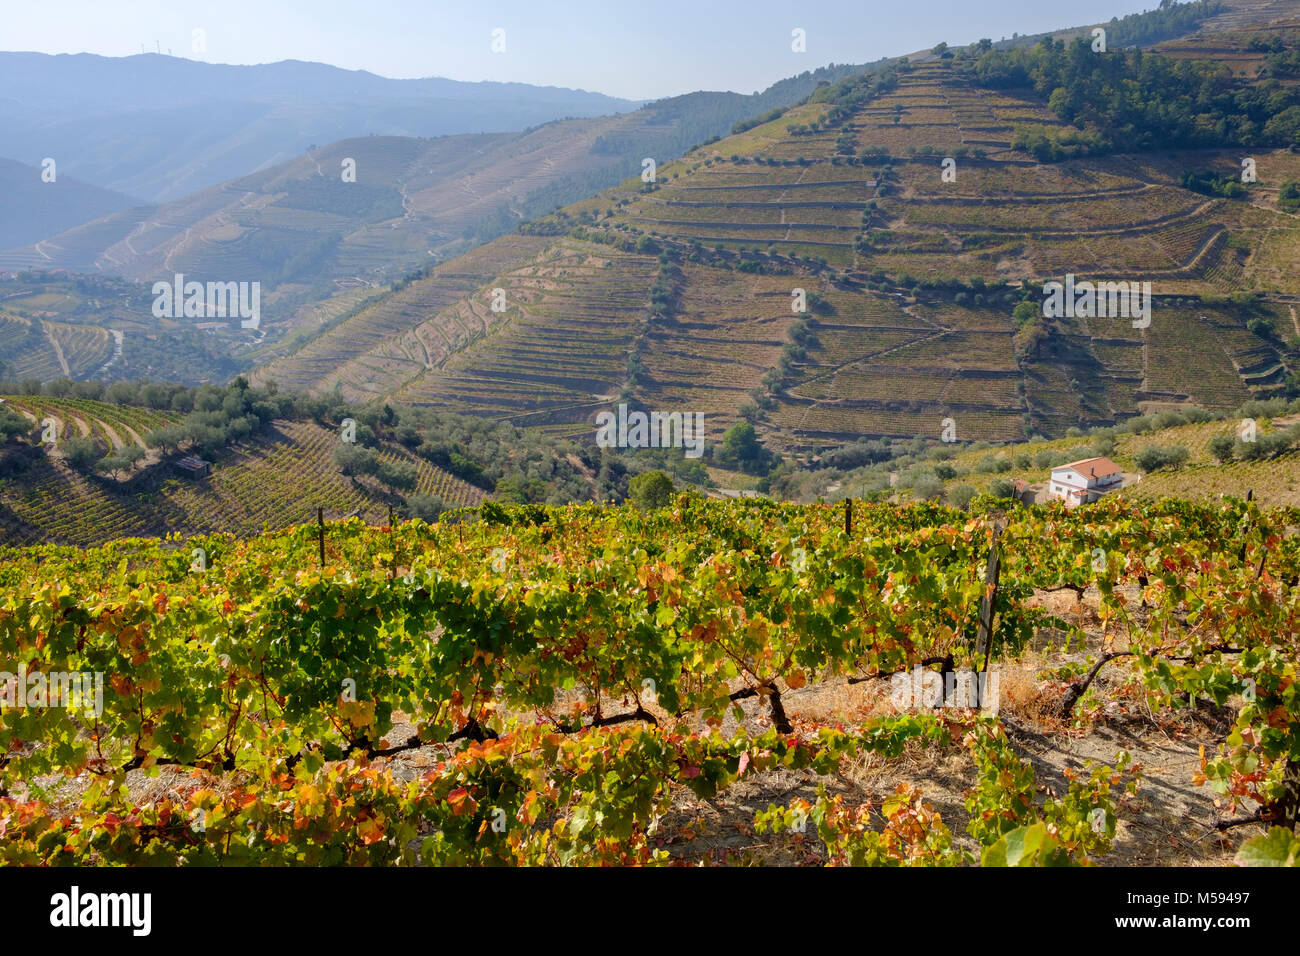 Vignobles en terrasses, près de la vallée de la rivière Douro, Pinhao, Portugal Banque D'Images